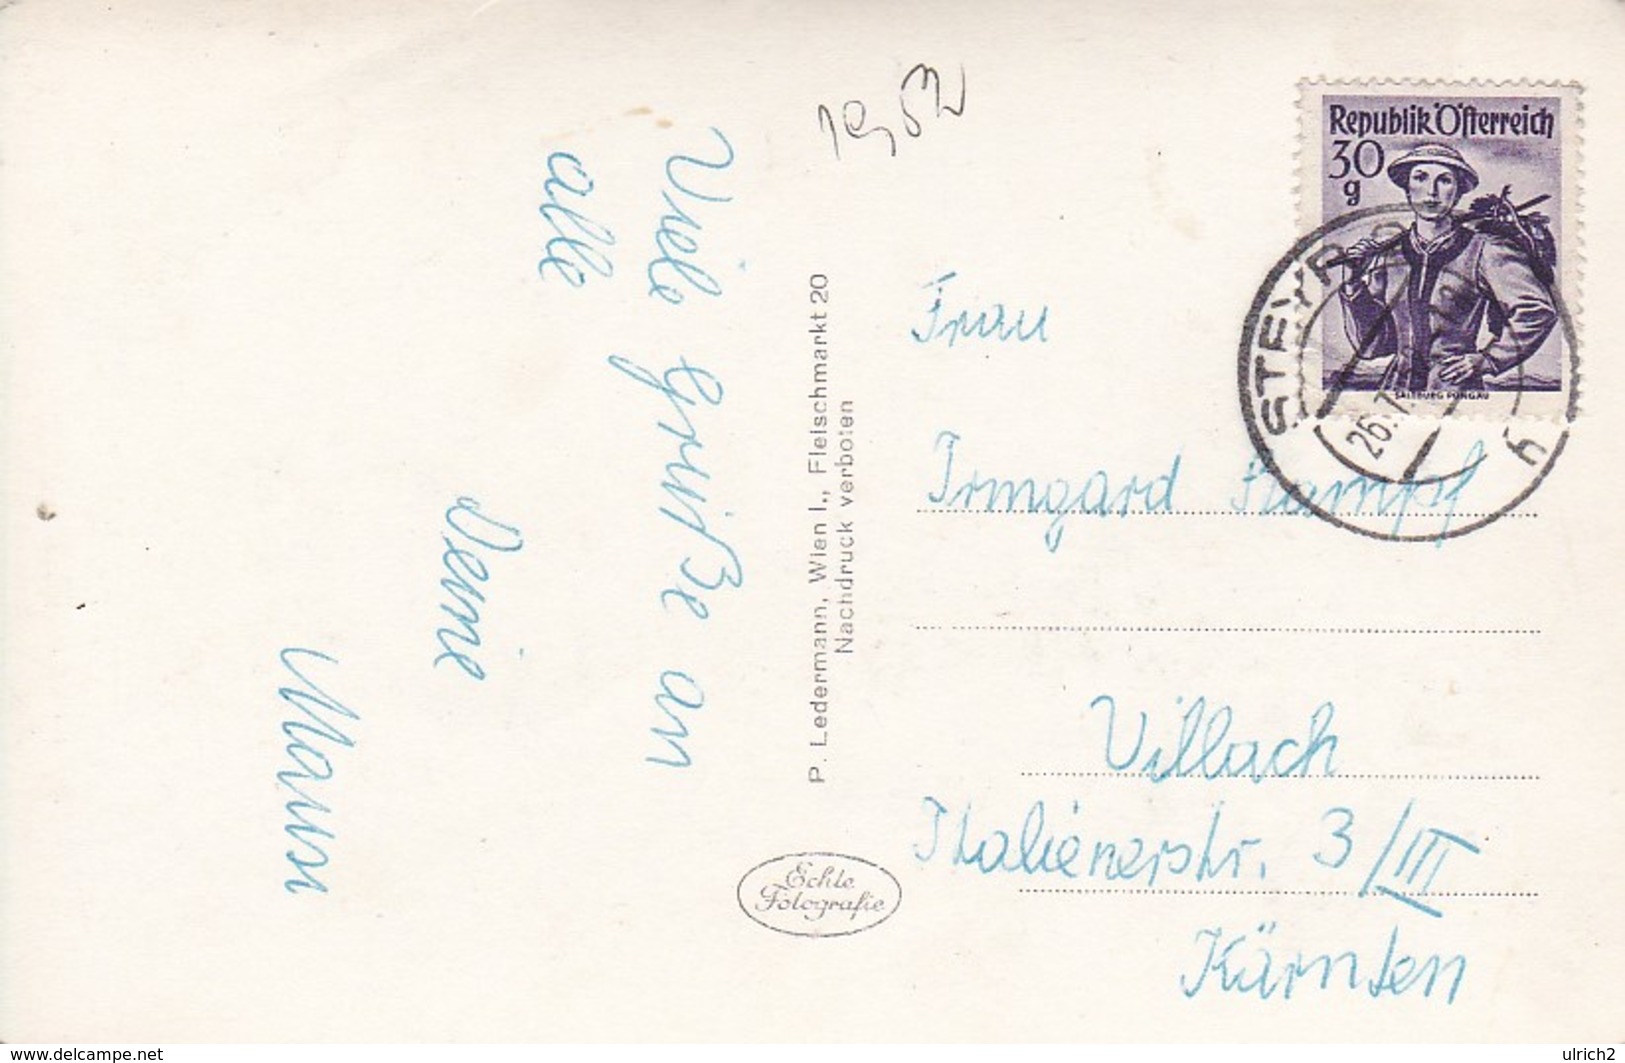 AK Steyr - Mehrbildkarte - Schnallntor Christkindl Bummerlhaus Werndl-Denkmal St. Ulrich - 1958 (41124) - Steyr